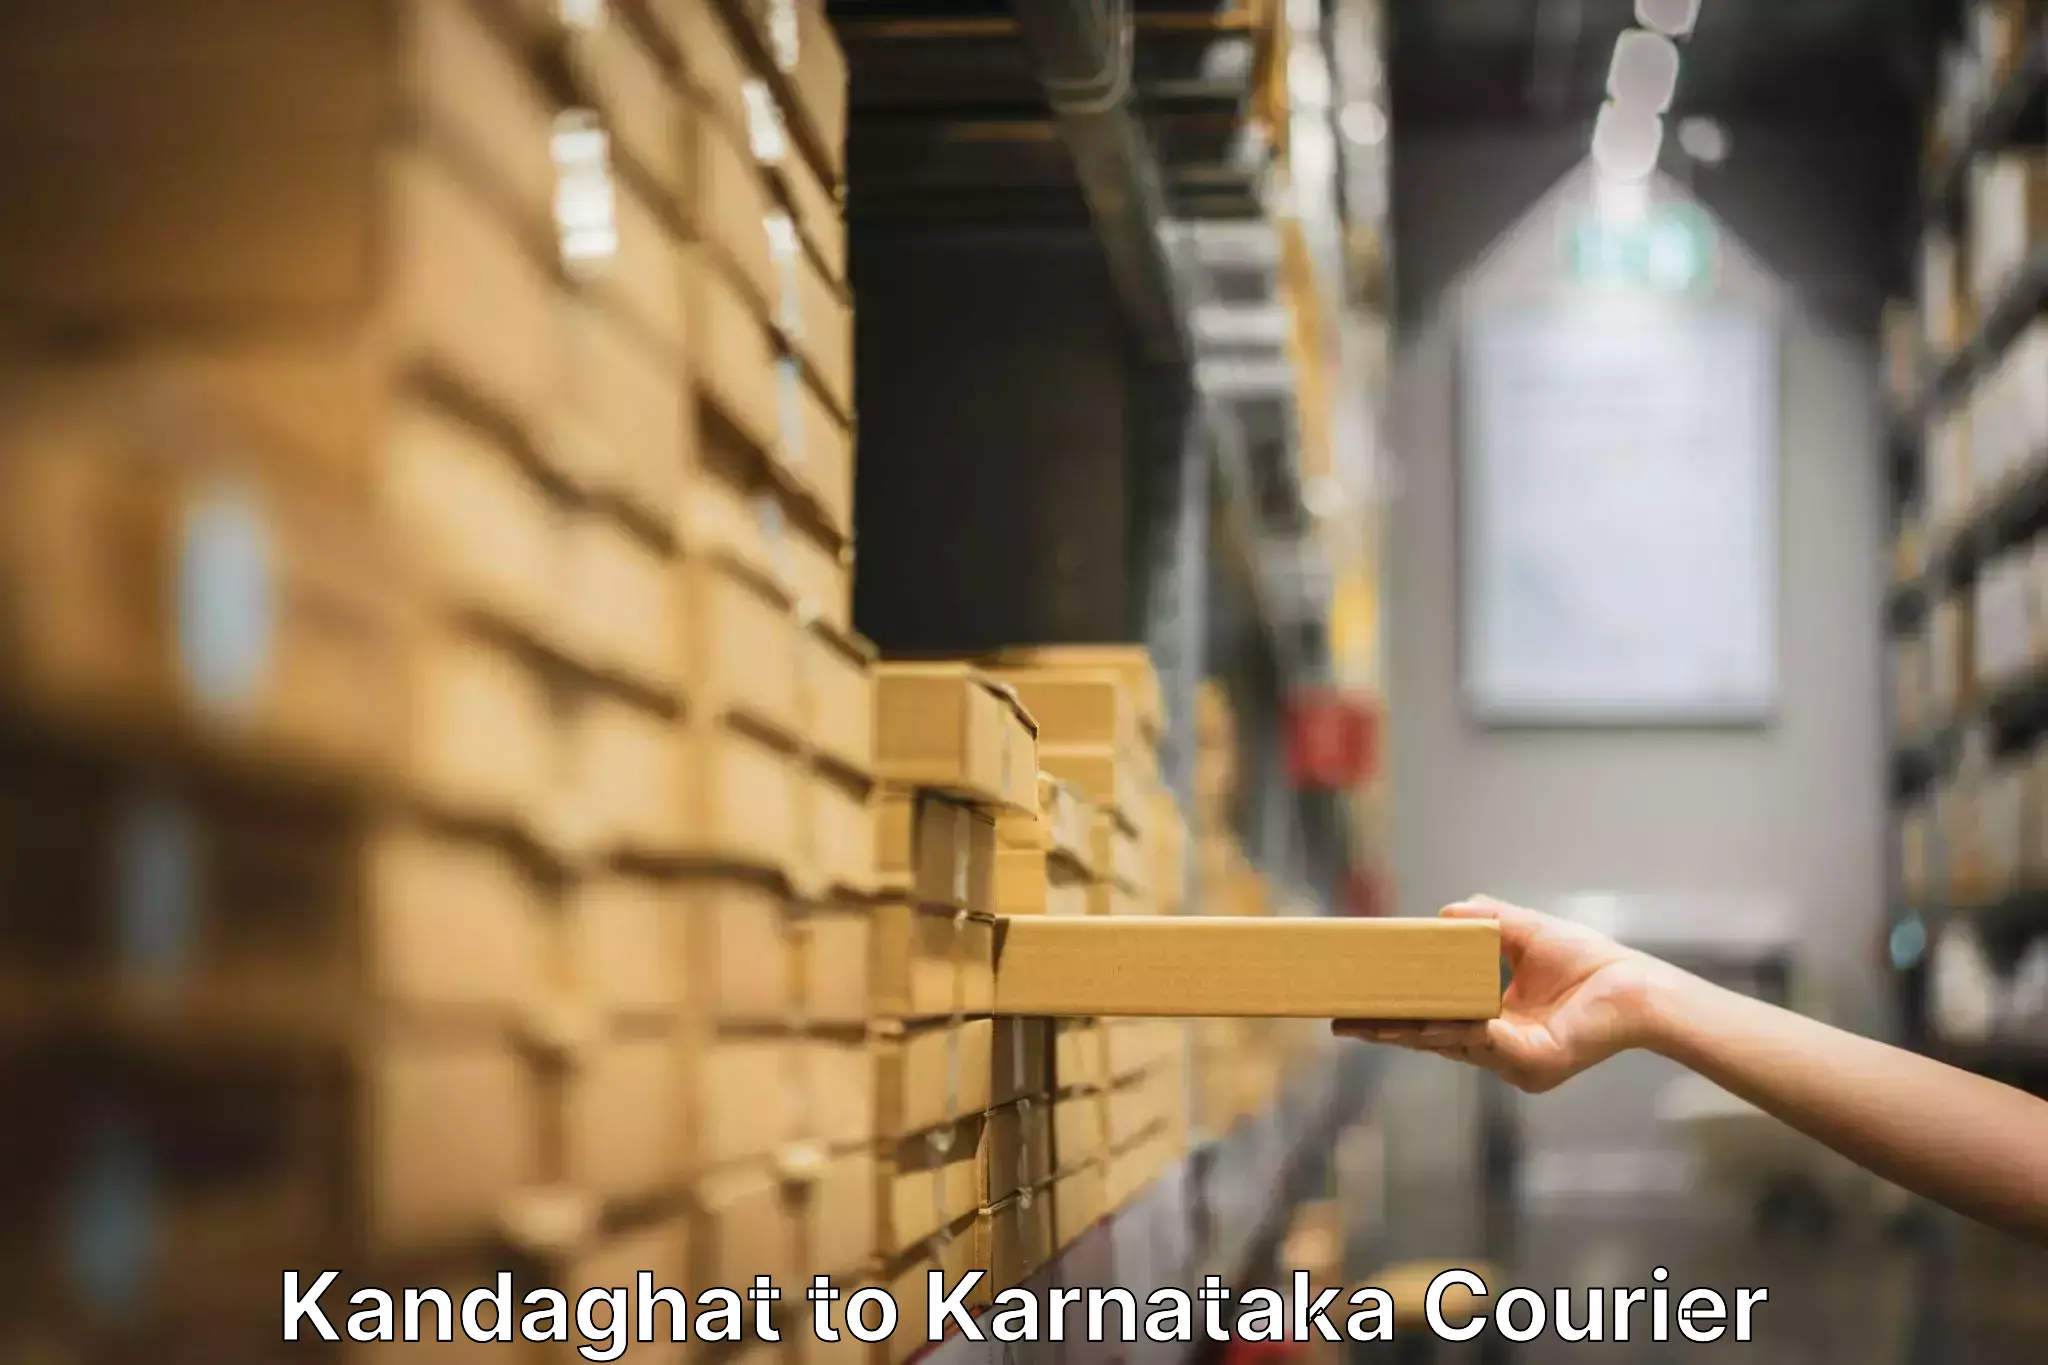 Trusted moving company Kandaghat to Chikkamagaluru